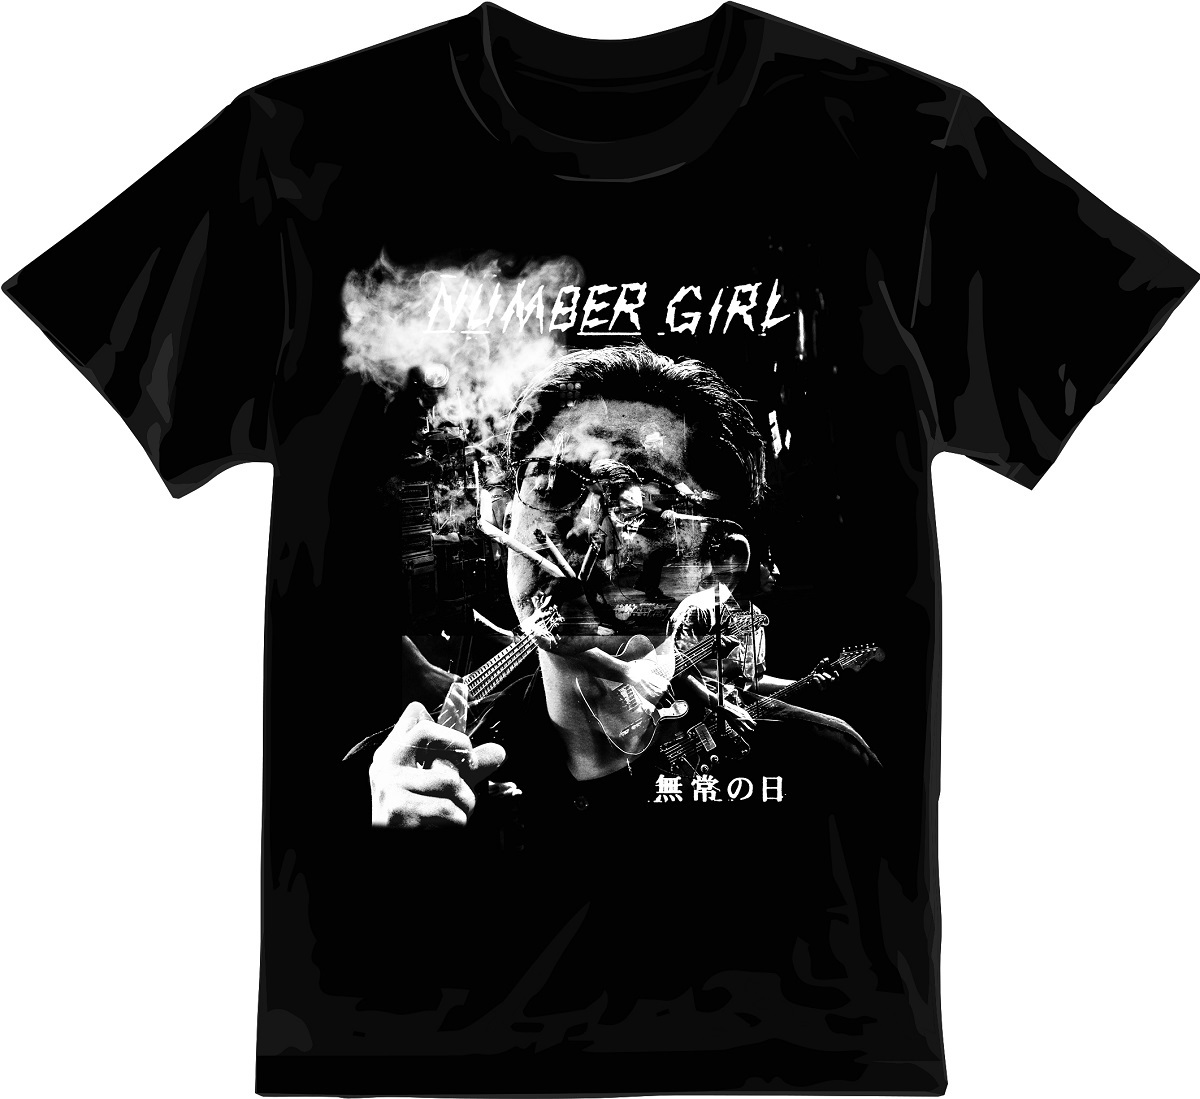 『NUMBER GIRL 無常の日』初回限定スペシャルパッケージ Tシャツ絵柄